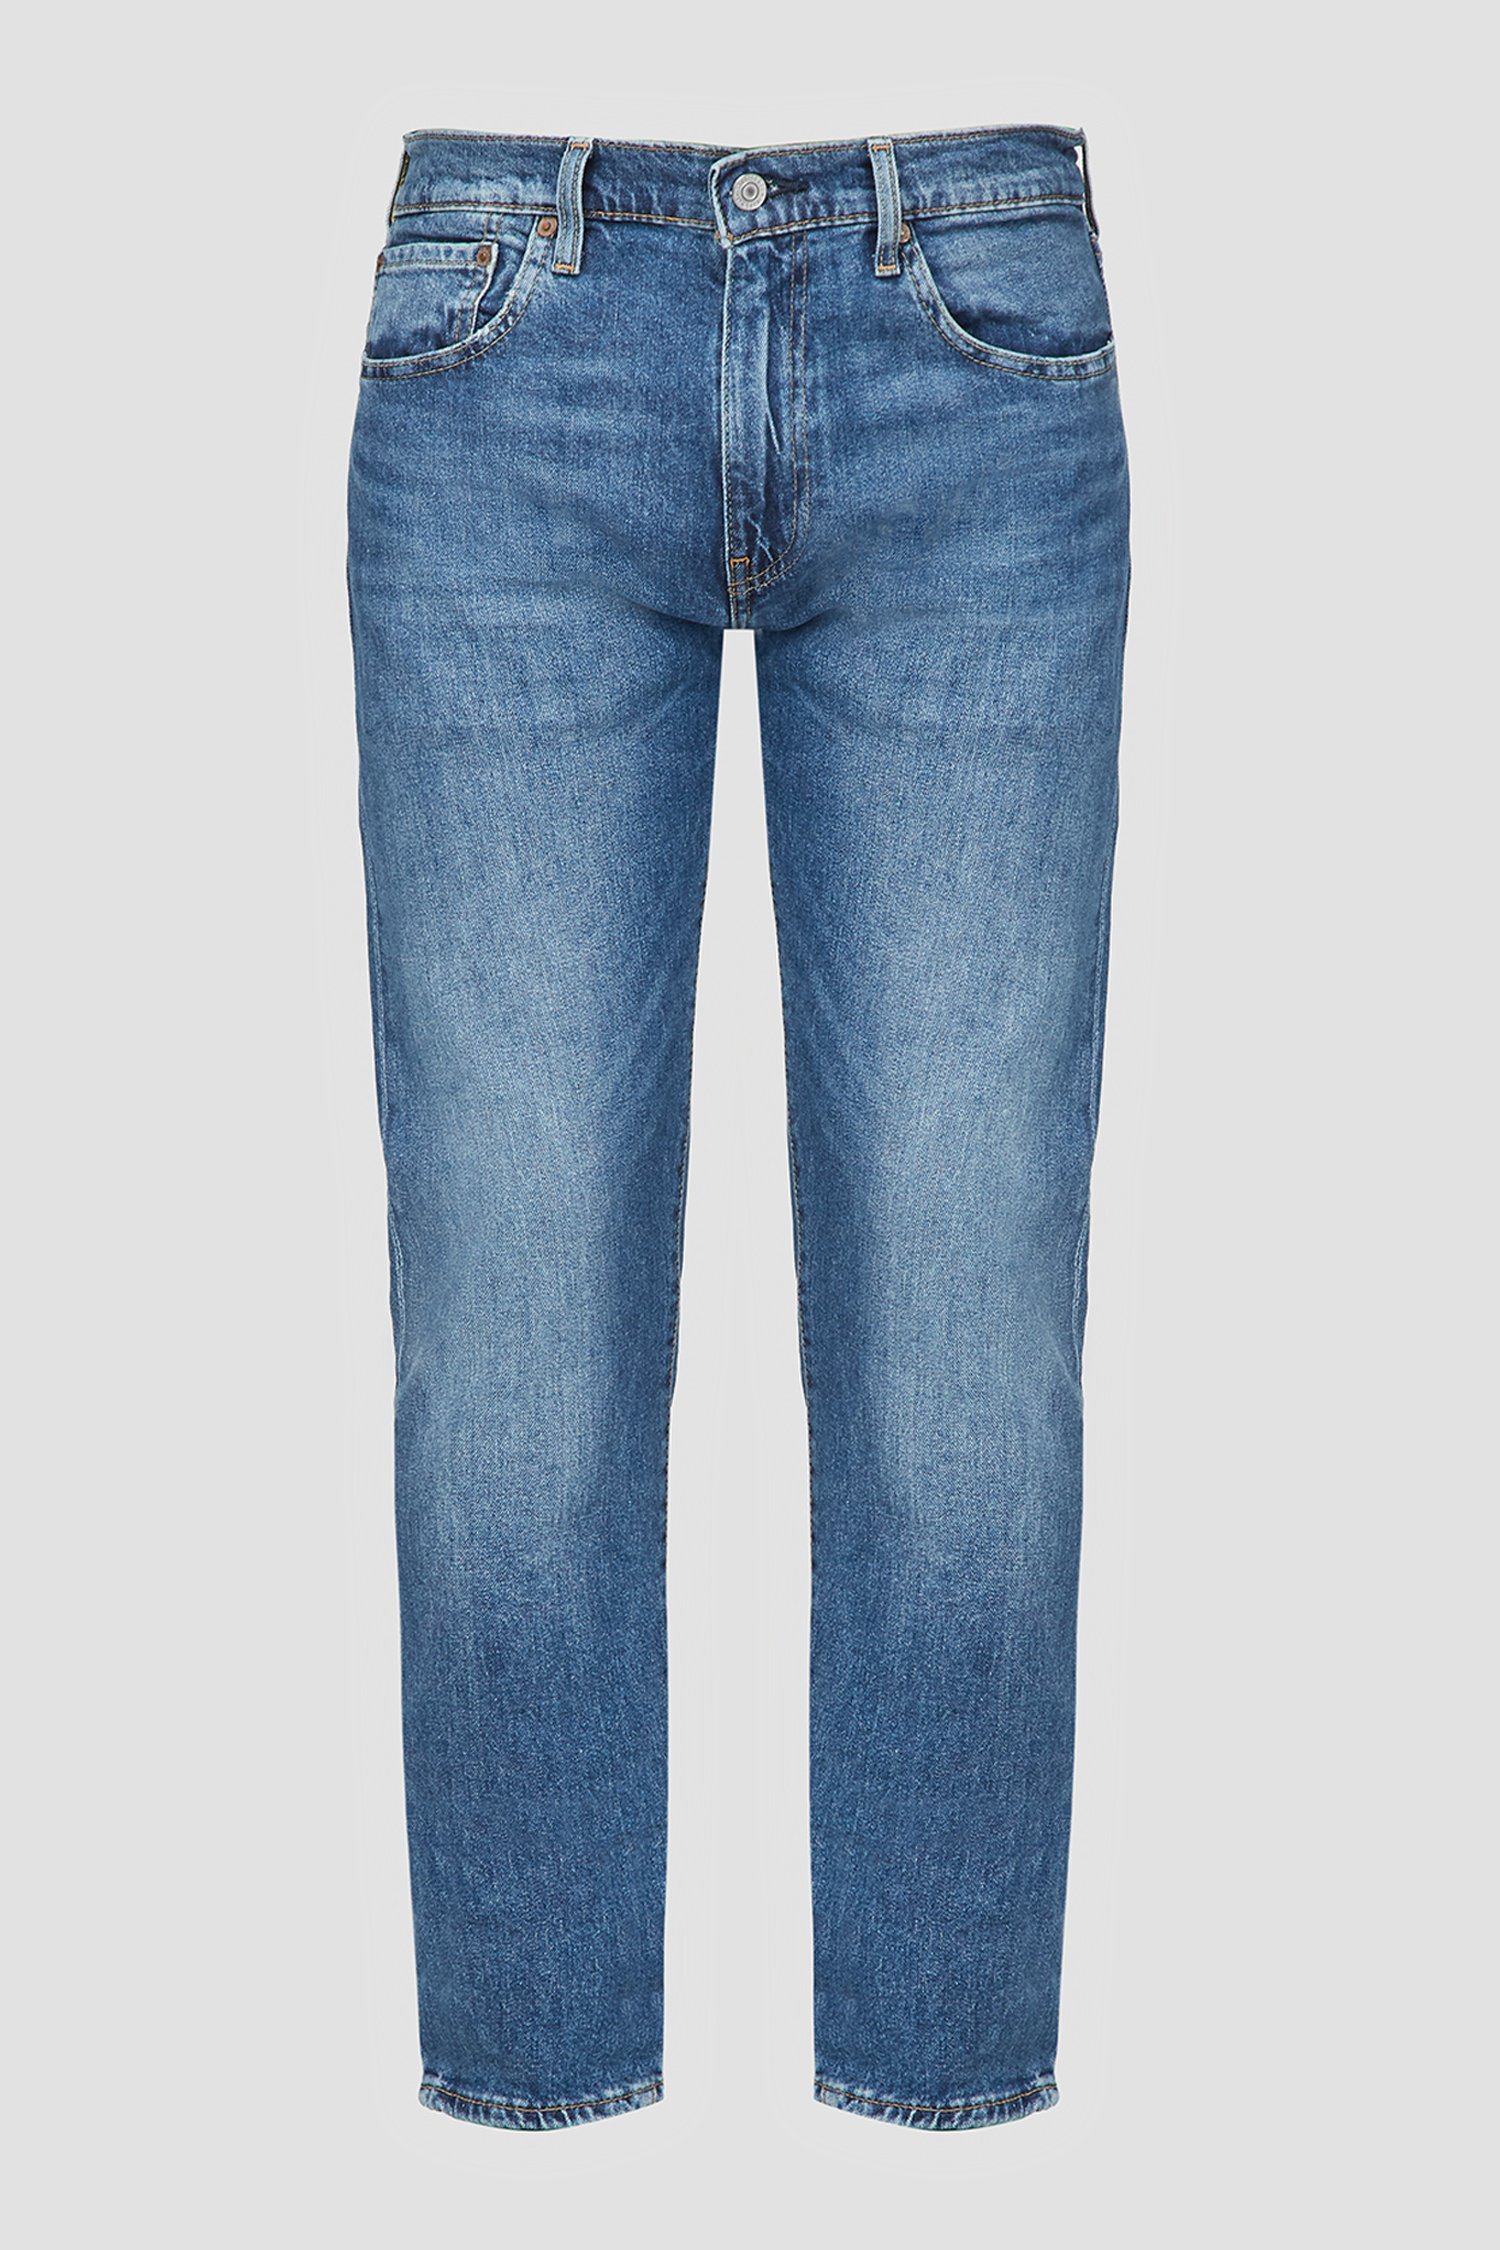 Мужские голубые джинсы 512™ Slim Taper 1